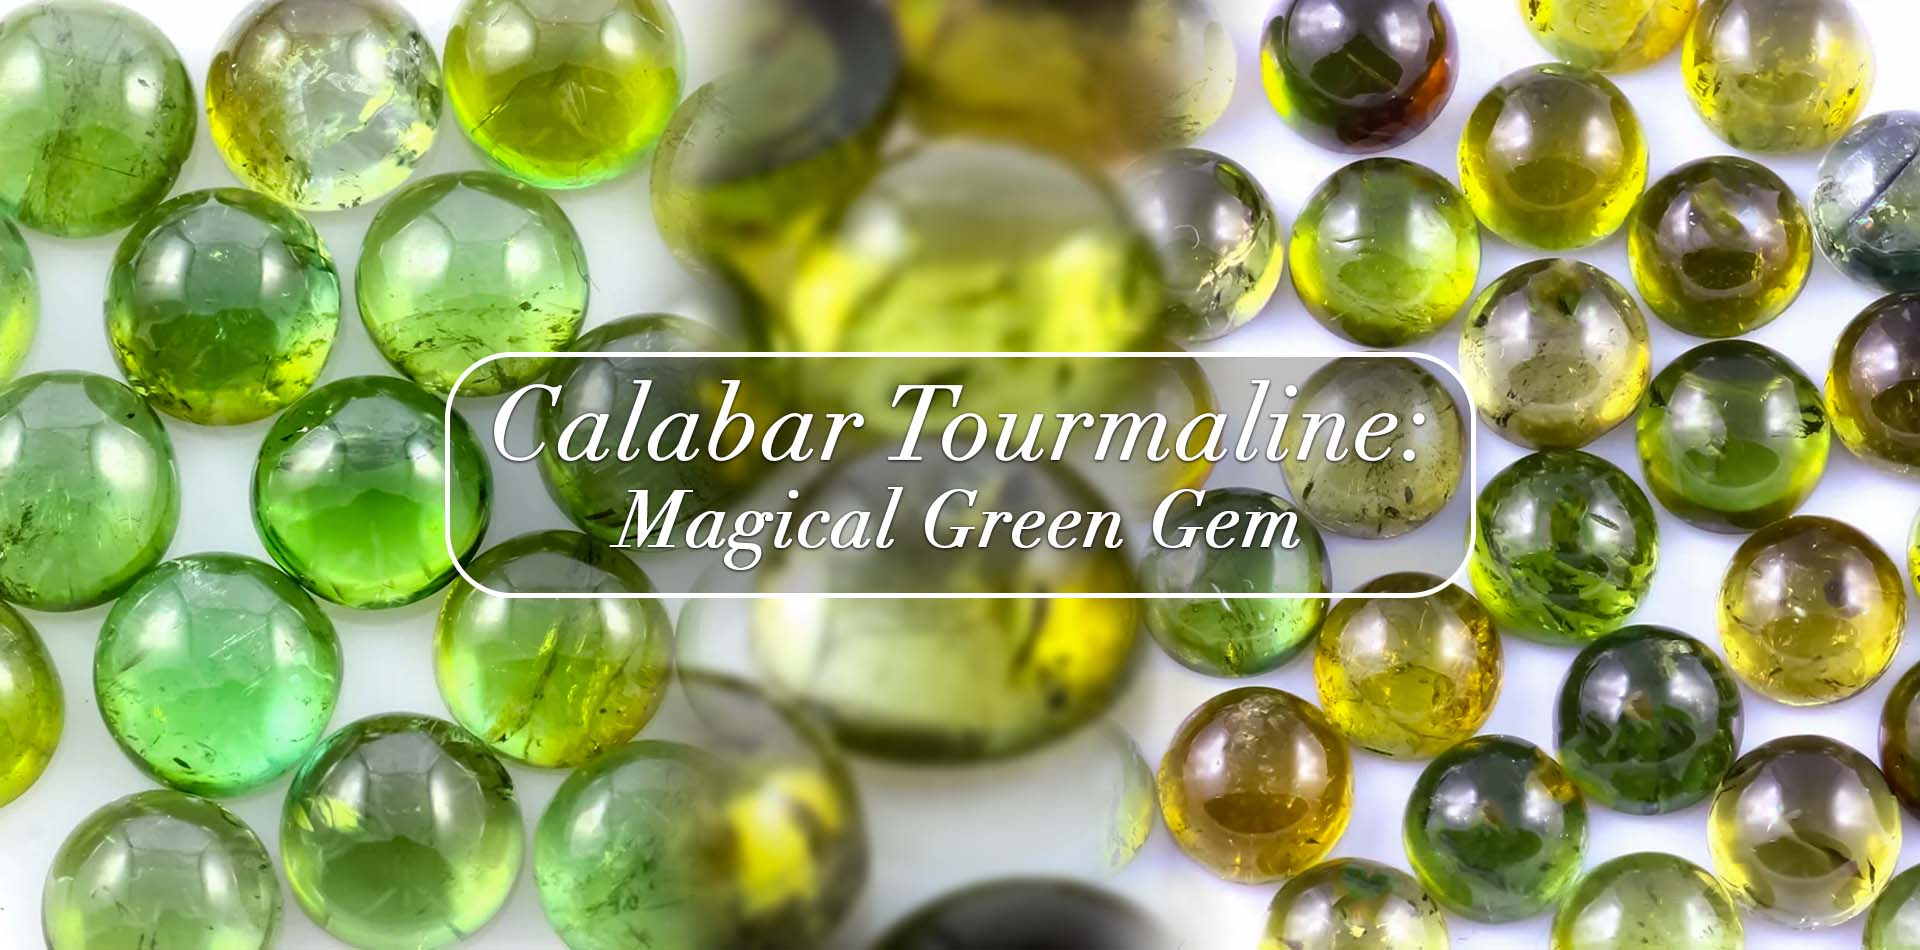 Calabar Tourmaline: Magical Green gem